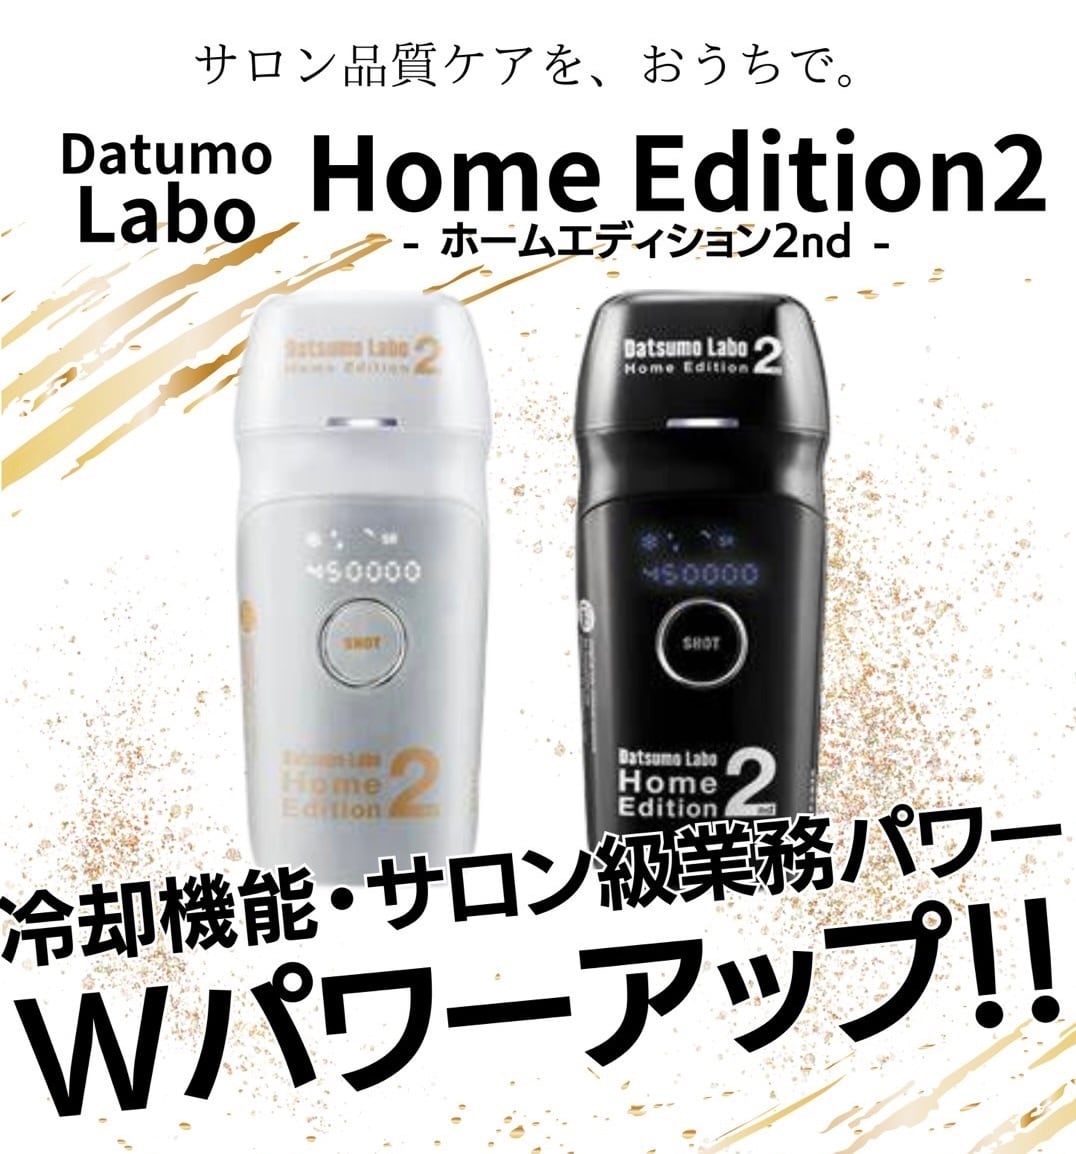 脱毛ラボ　Datsumo Labo Home Edition